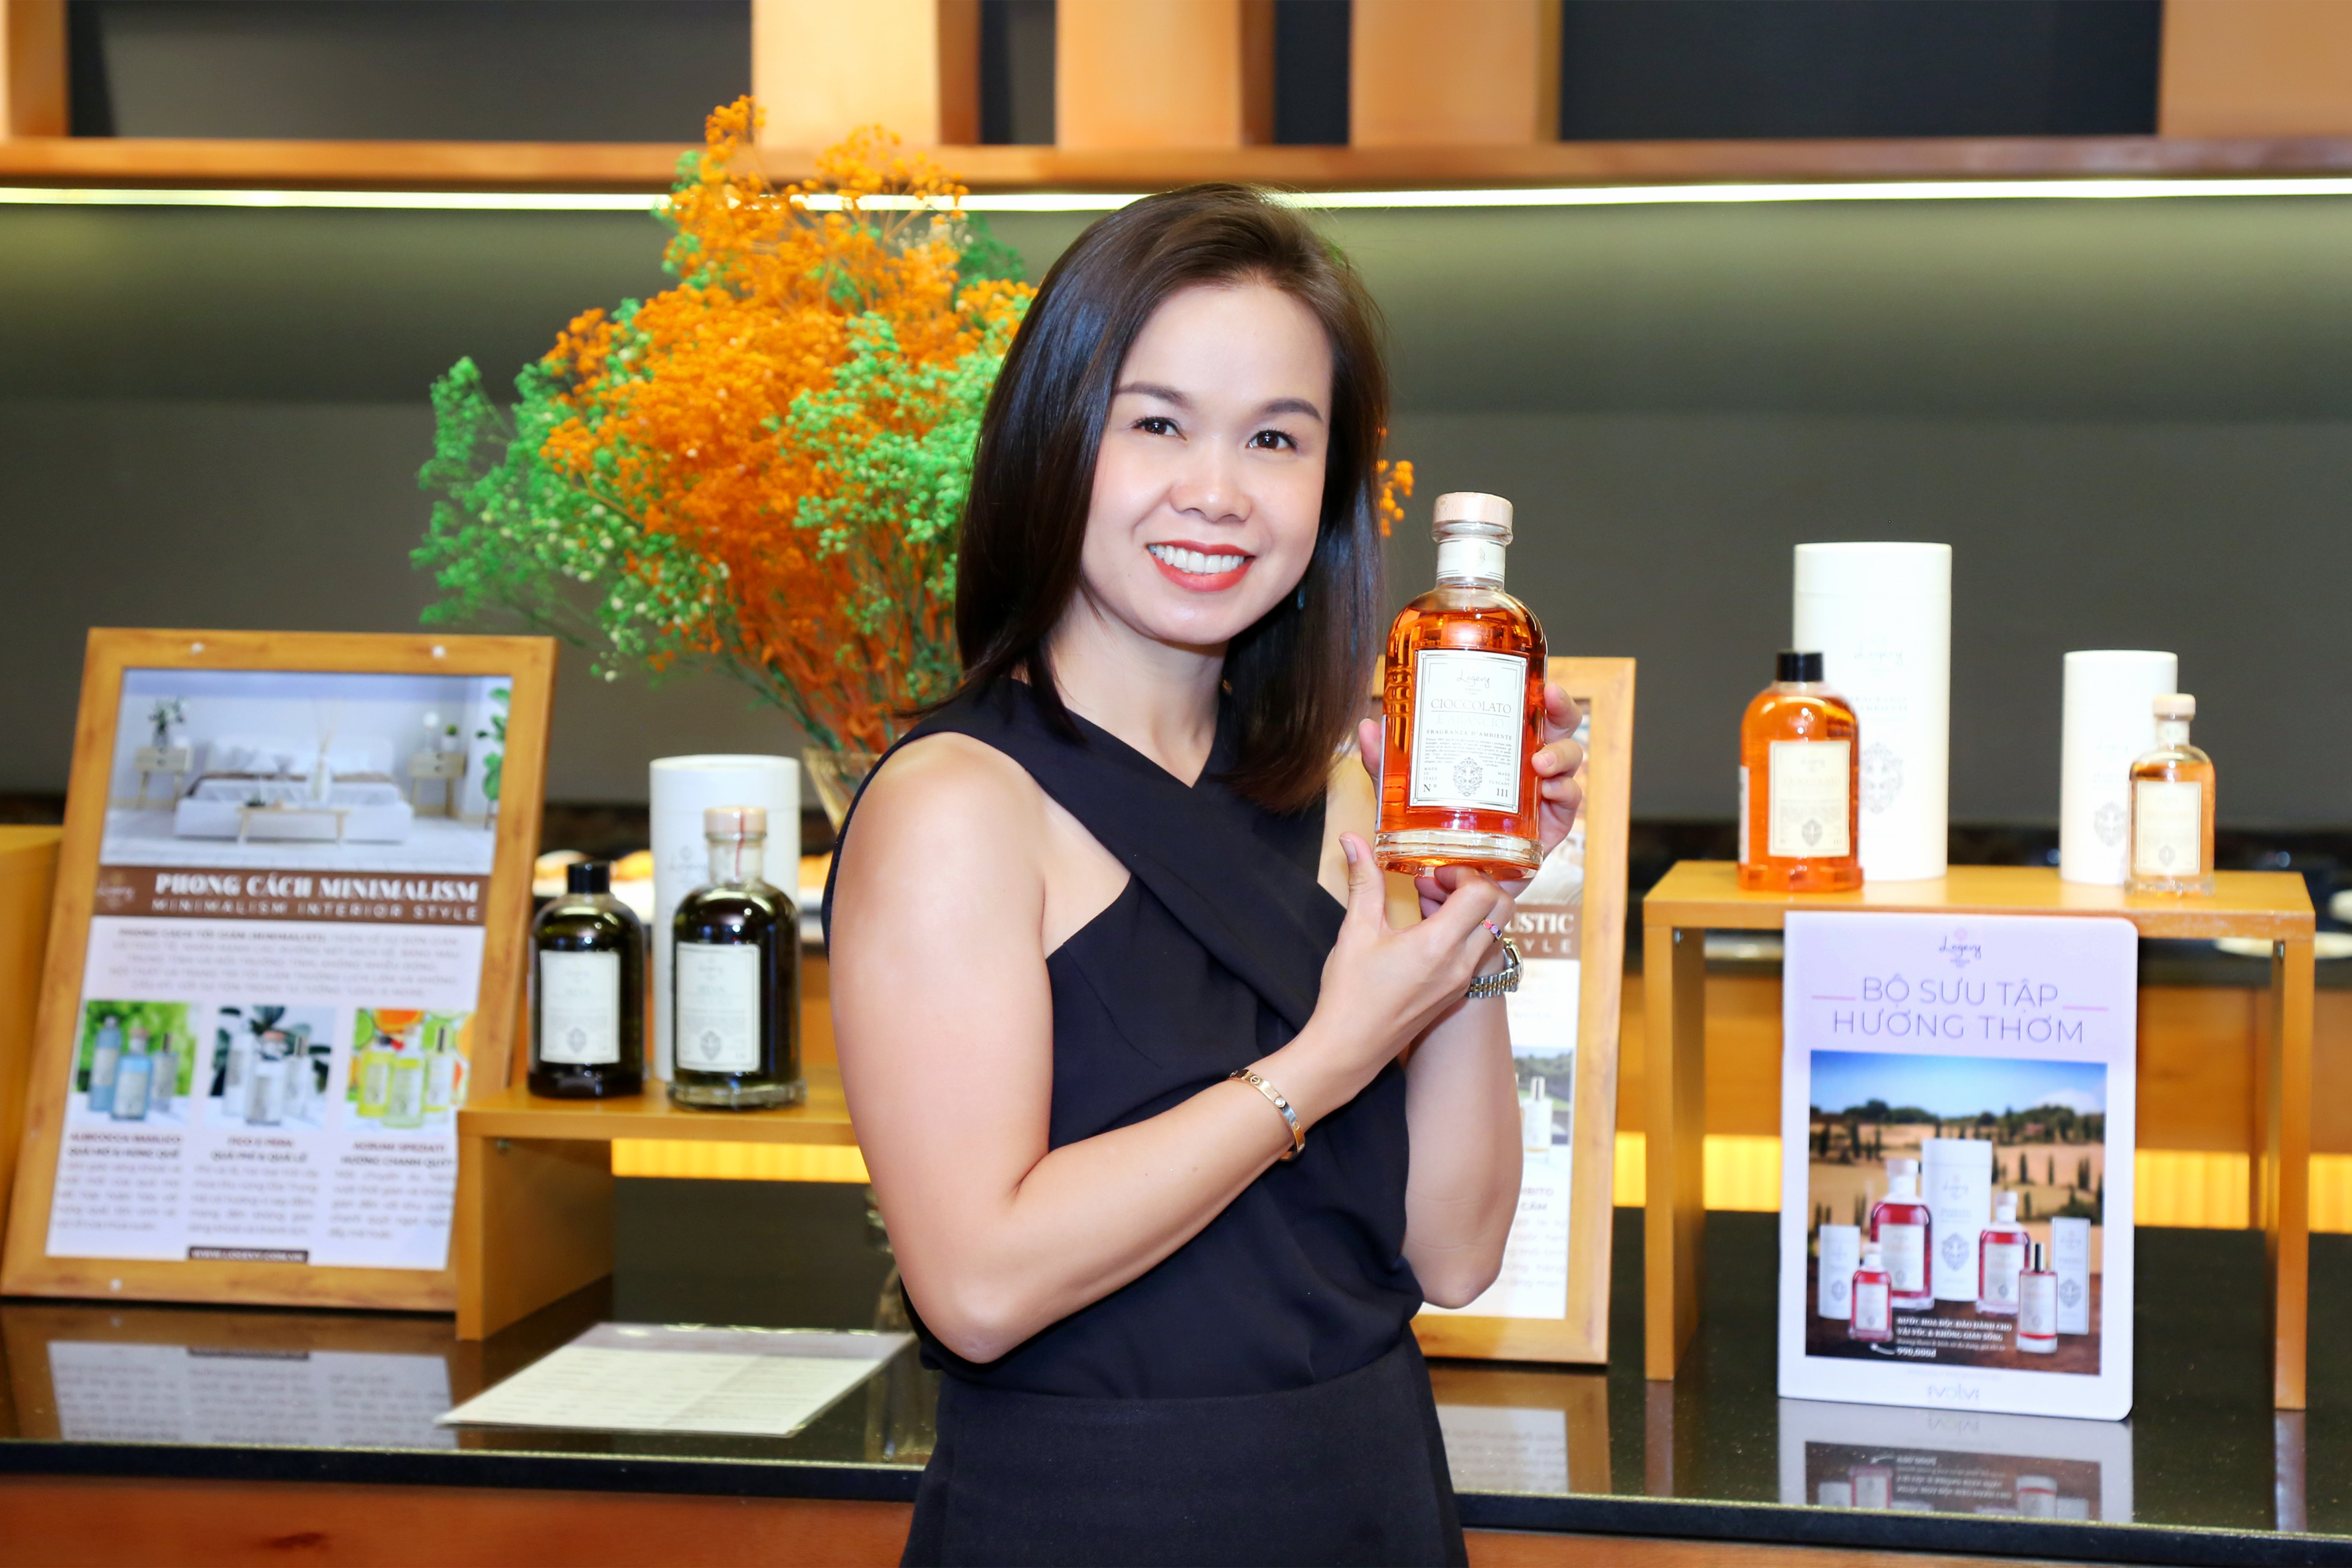 Chị Vân Phạm – Giám đốc của Evolve Wellness Center, đơn vị phân phối độc quyền sản phẩm Logevy tại Việt Nam